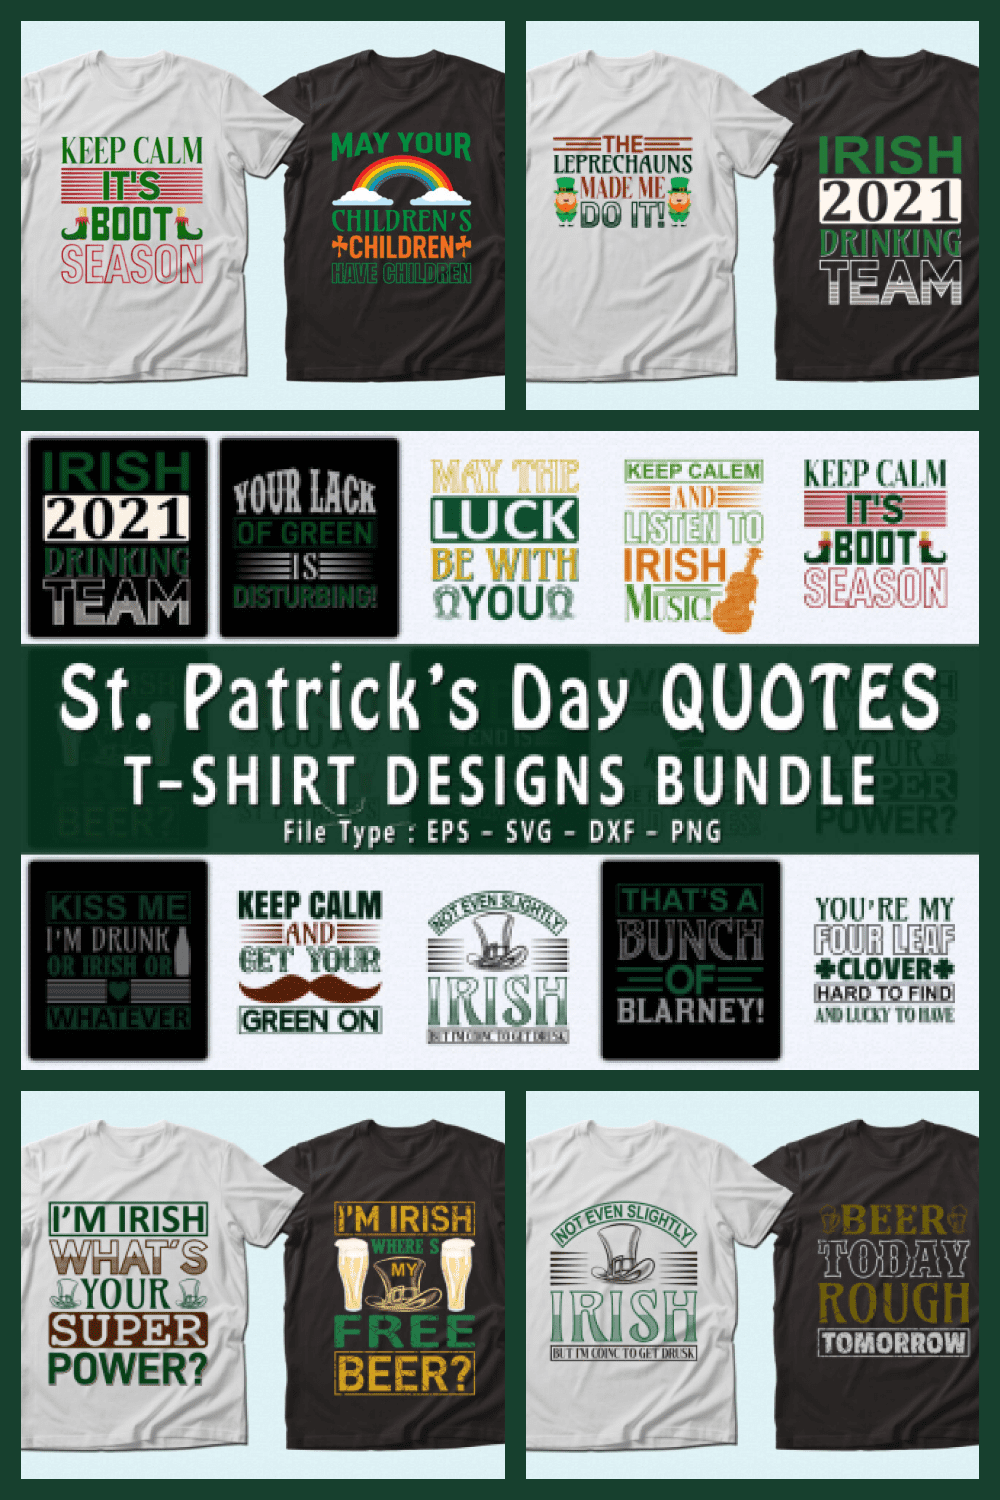 Trendy 20 St. Patrick’s Day Quotes T-shirt Designs Bundle - MasterBundles - Pinterest Collage Image.